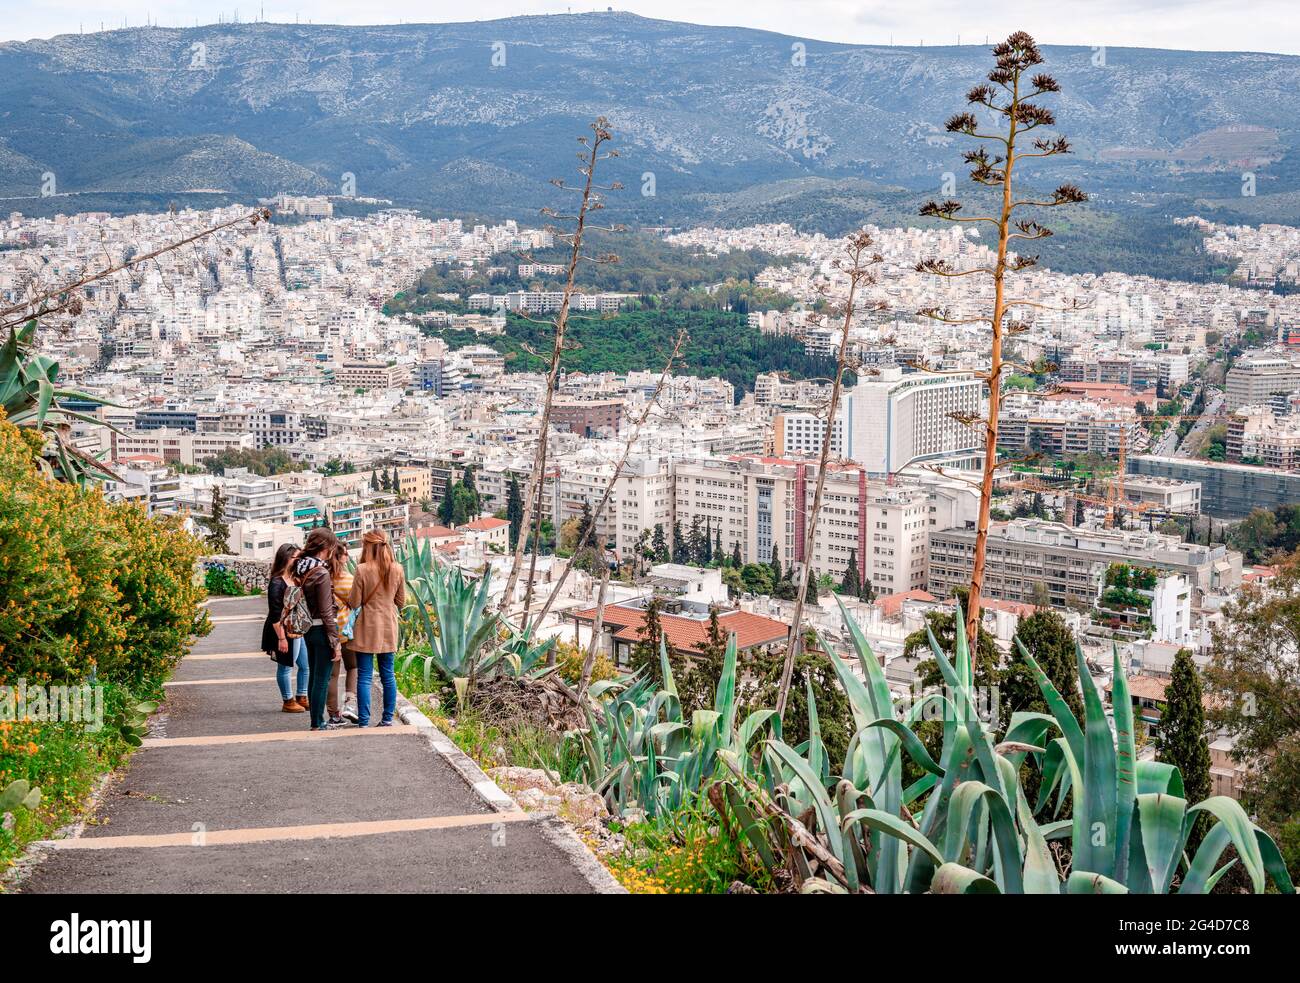 Atene, Grecia - 4 aprile 2015: Le giovani ragazze godono della vista dal sentiero che conduce al monte Licabetto. Atene e il monte Hymettus sono nel backgrou Foto Stock